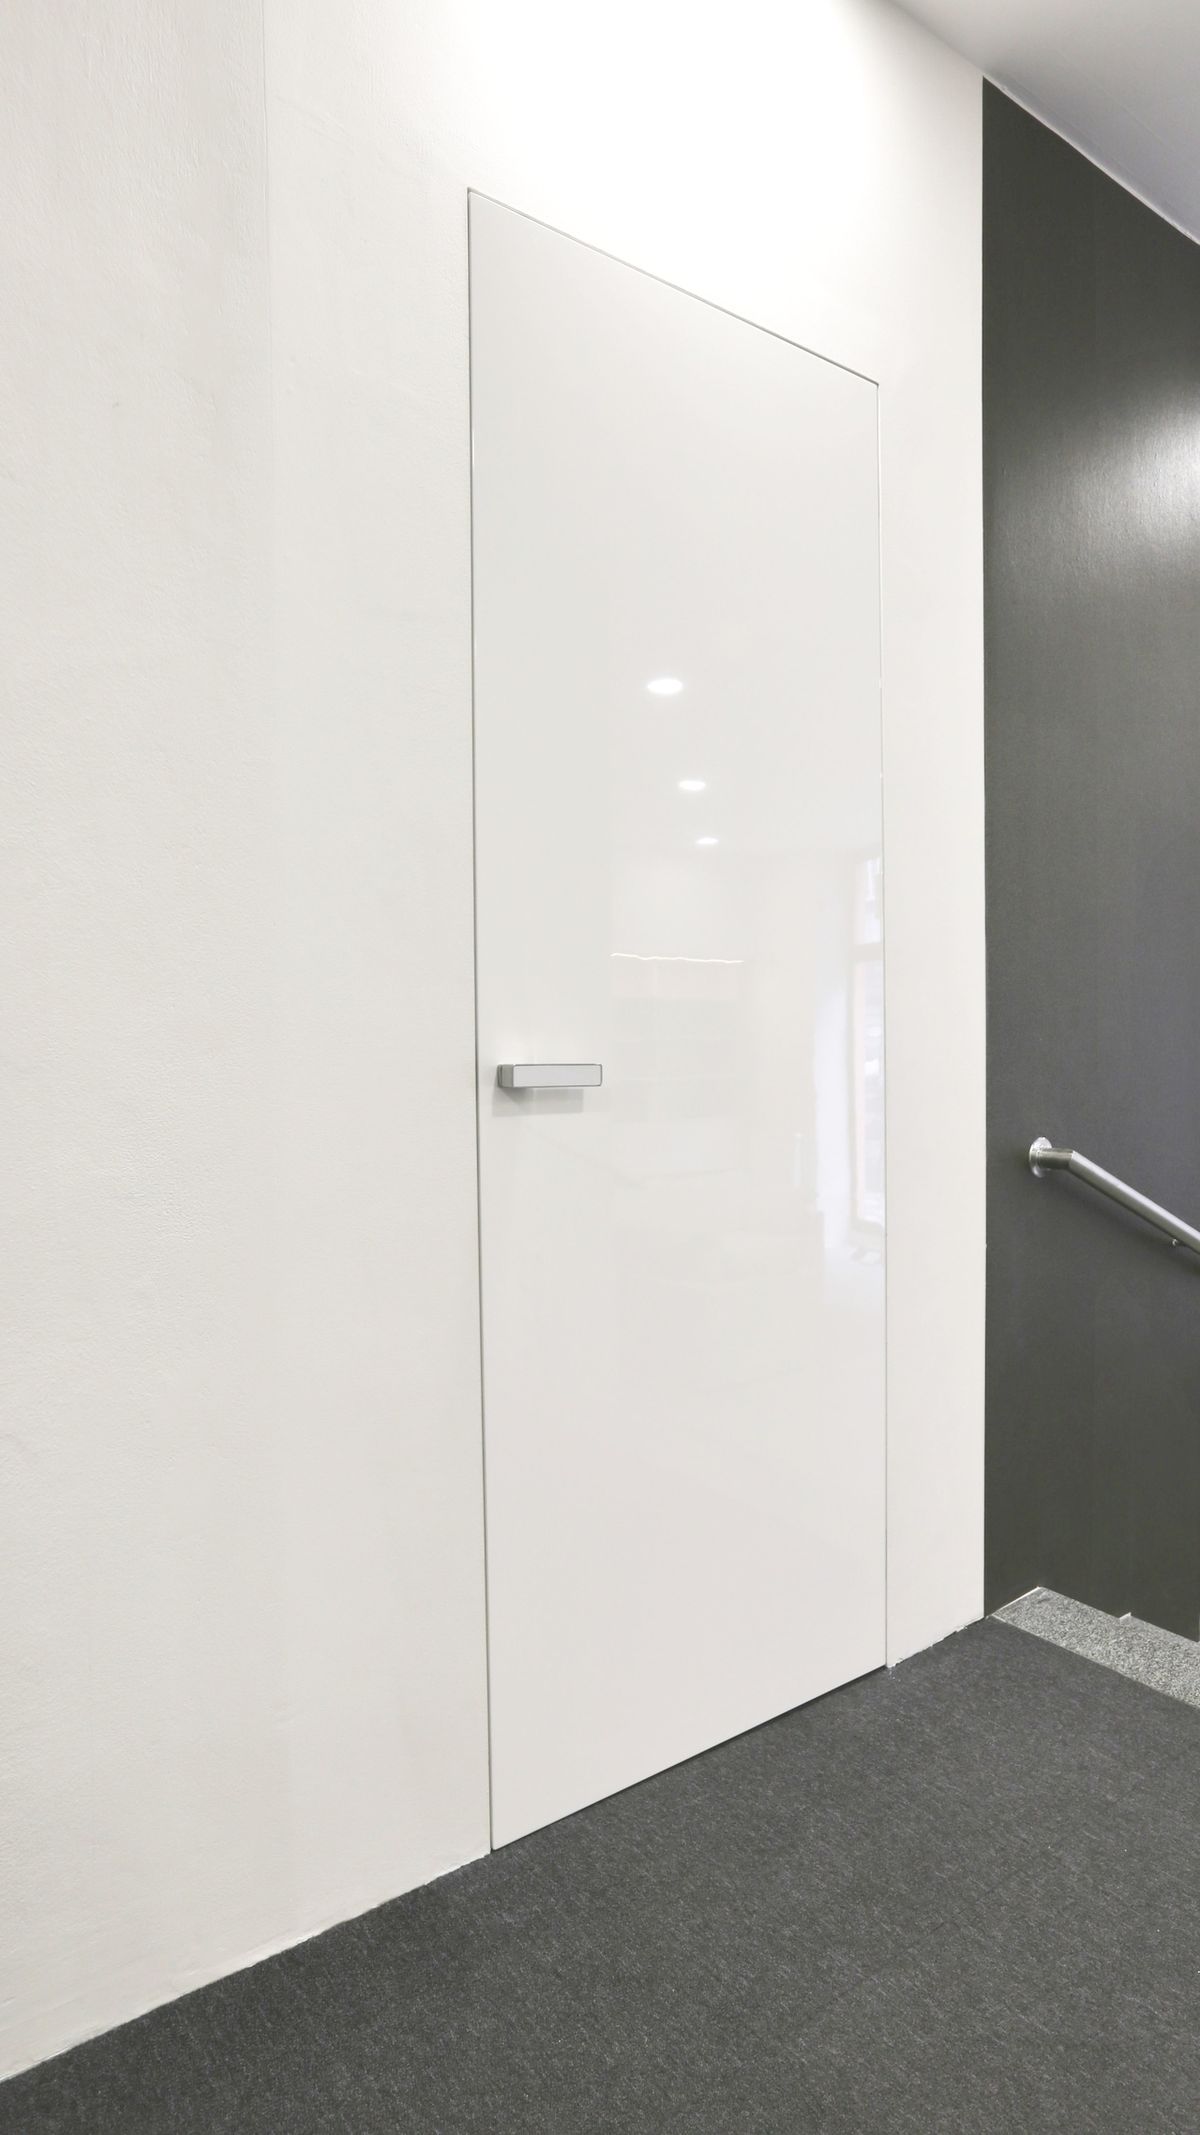 Neviditelné řešení zárubní kliky a sjednocení vzhledu dveří s okolní stěnou se ideálně hodí do minimalisticky laděných interiérů.